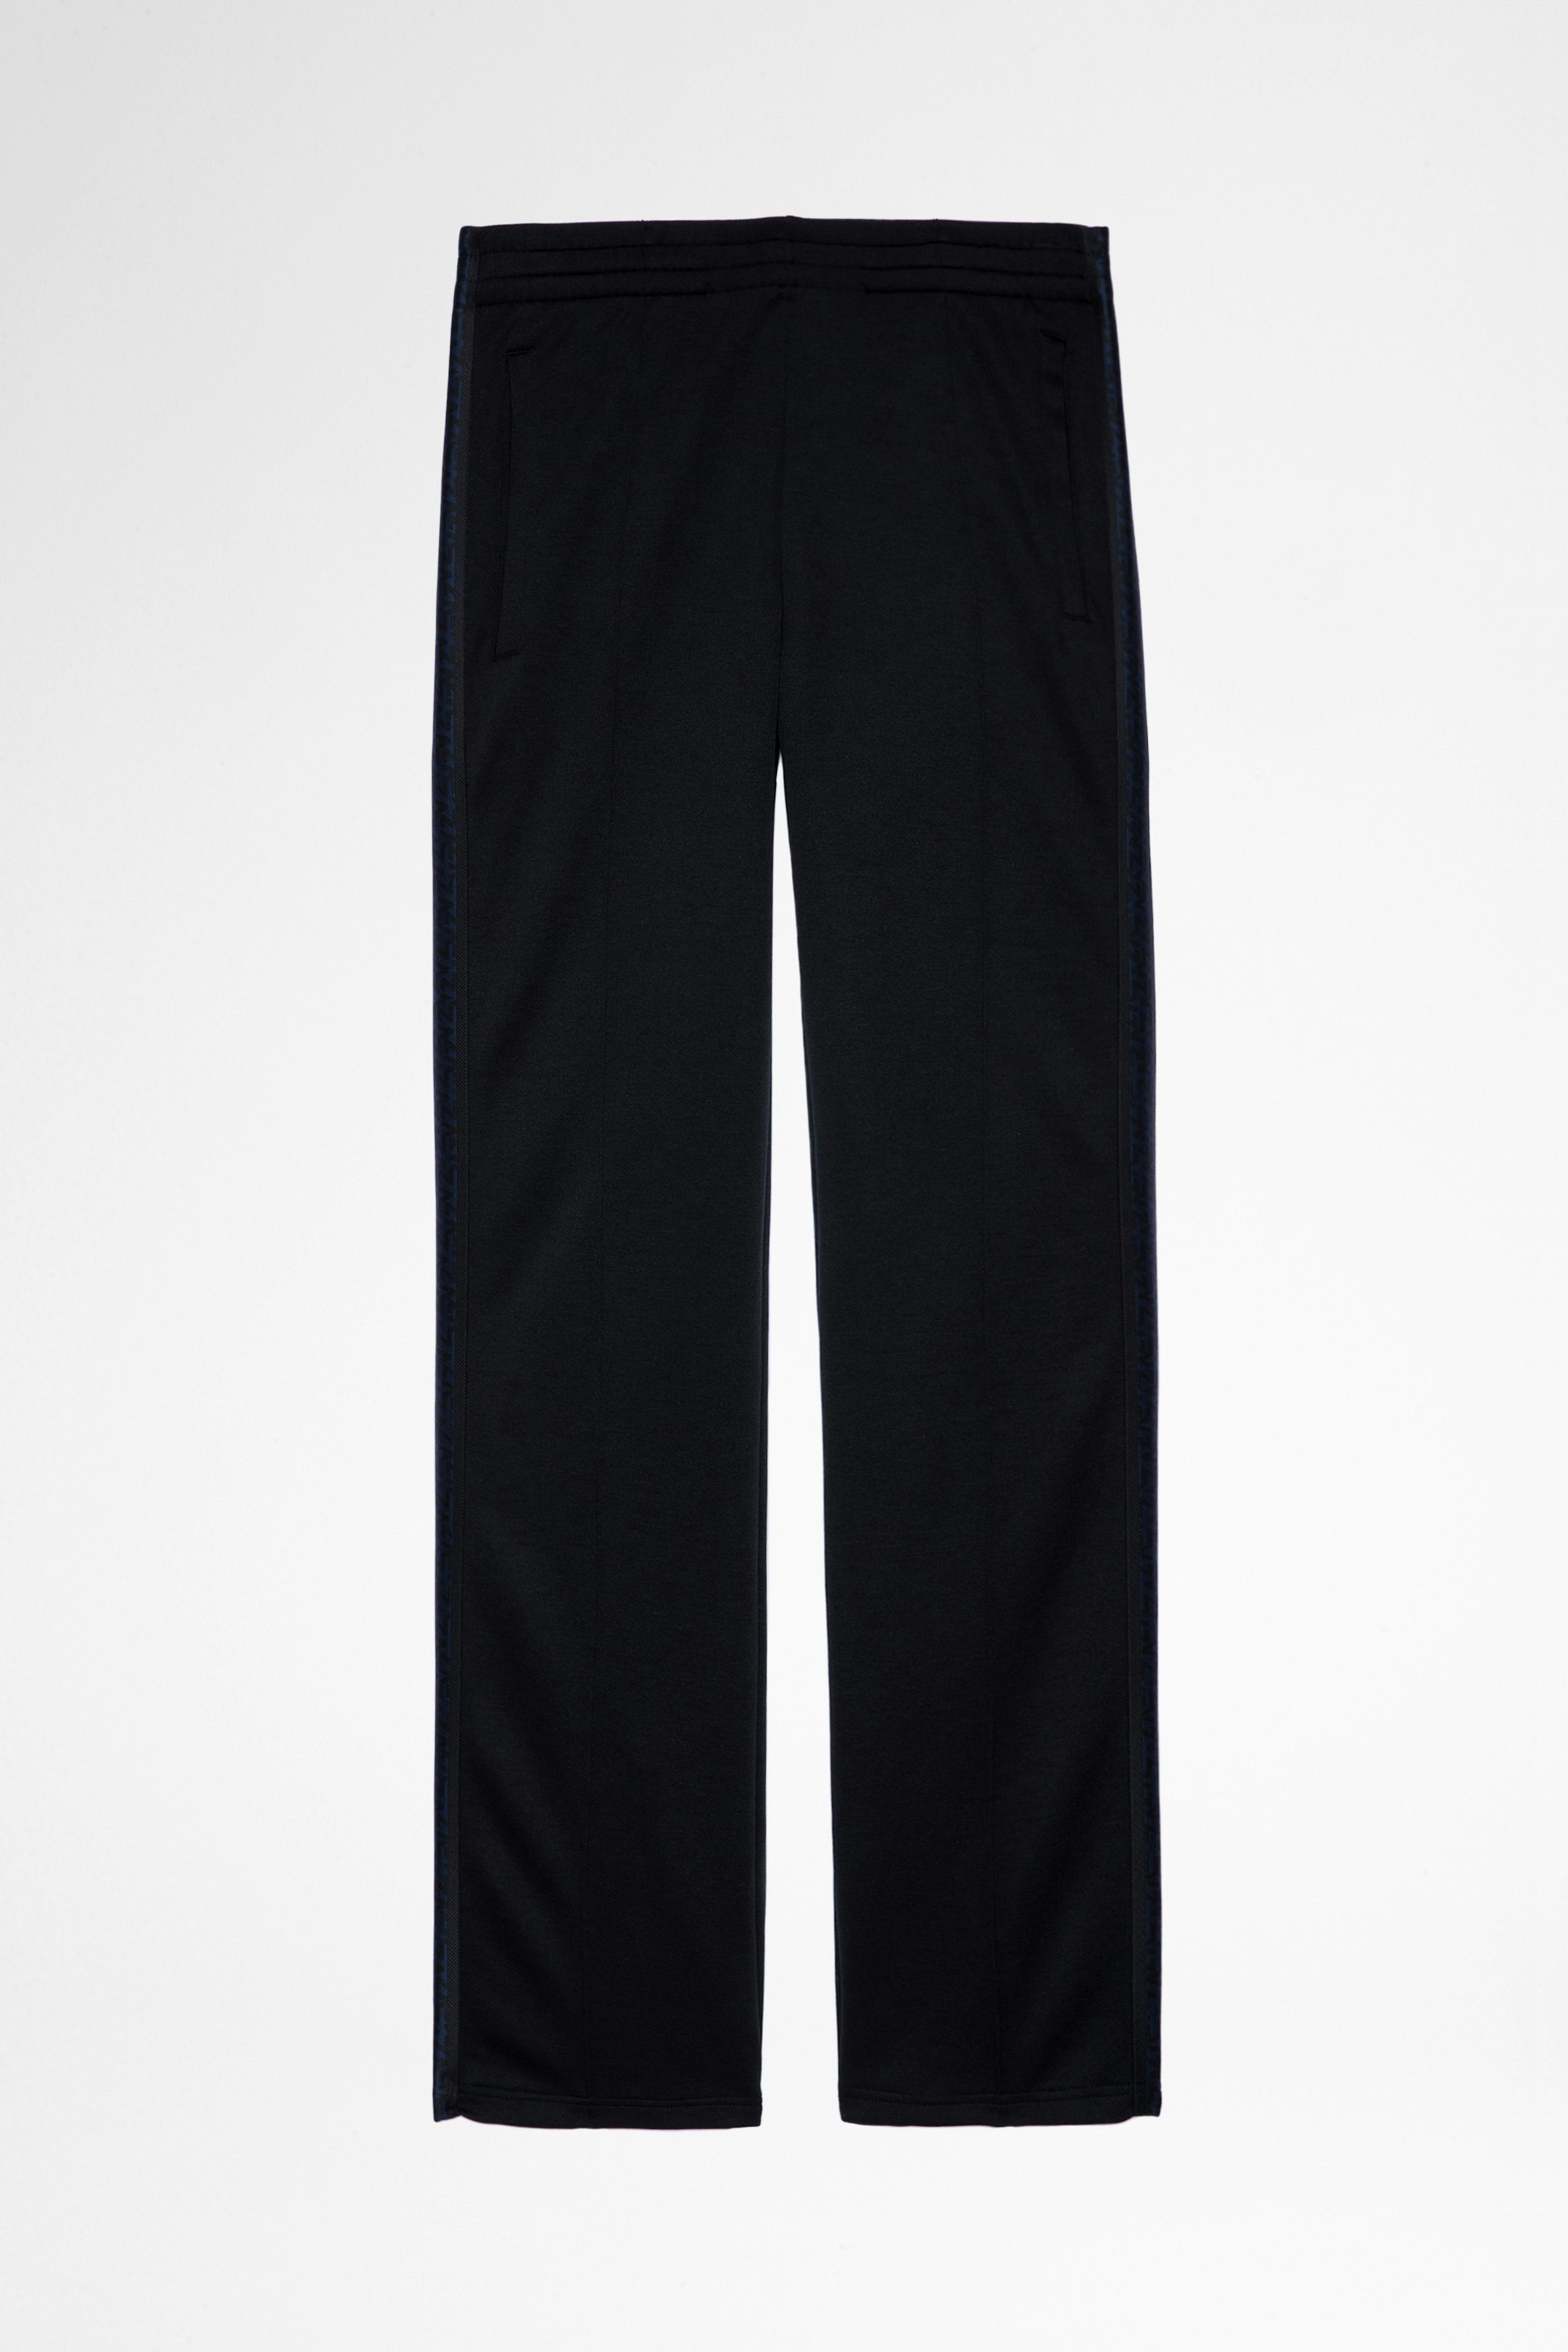 Pantalon Chillyn Pantalon flare noir à bandes latérales Homme. Fait avec des fibres issues de l’agriculture biologique